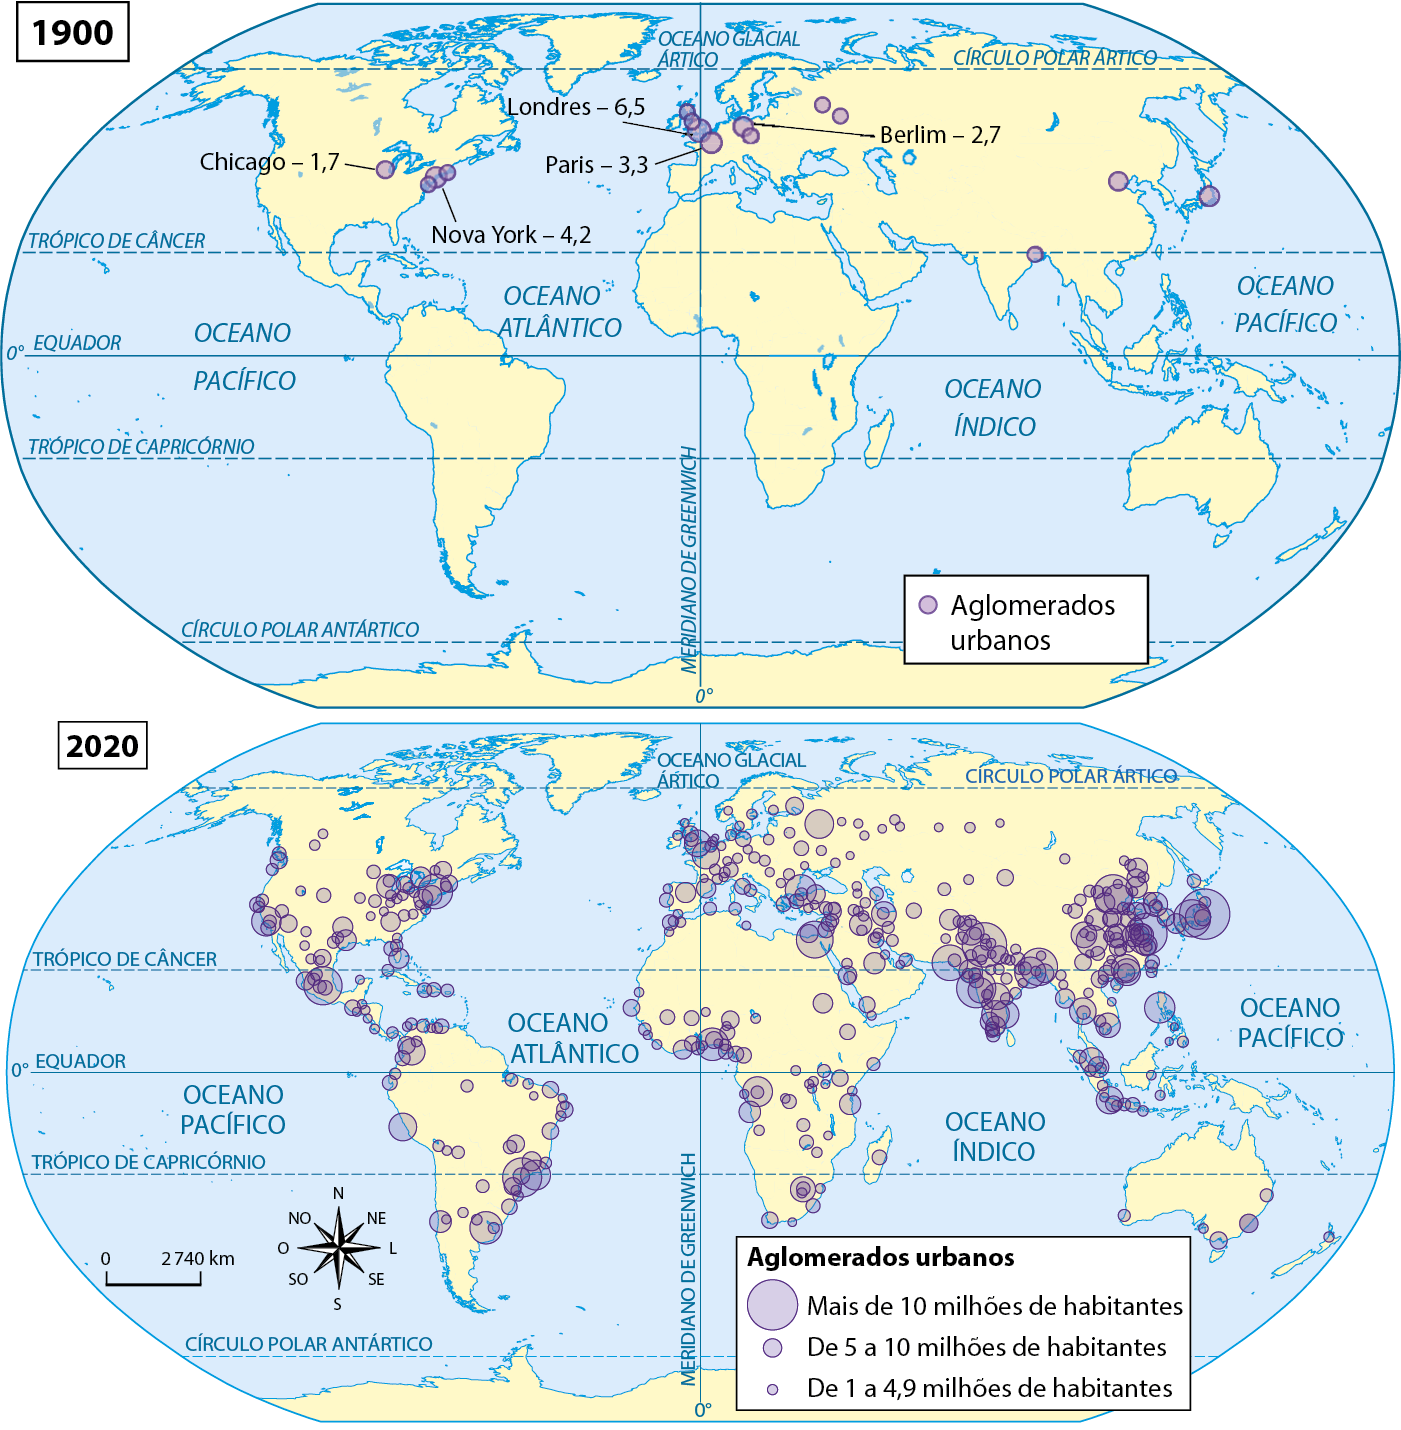 Mapa. Mundo: Aglomerados urbanos com mais de 1 milhão de habitantes (1900 a 2020). Dois mapas de círculos proporcionais apresentam a localização dos aglomerados urbanos com mais de 1 milhão de habitantes em 1900 e em 2020, respectivamente. 1900. Alguns aglomerados urbanos com mais de 1 milhão de habitantes são apresentados no leste dos Estados Unidos, Europa e Ásia. O mapa destaca alguns dos aglomerados e sua respectiva população: Chicago: 1,7 milhões de habitantes; Nova York: 4,2 milhões de habitantes; Londres: 6,5 milhões de habitantes; Paris: 3,3 milhões de habitantes; Berlim: 2,7 milhões de habitantes. 2020. Diversos aglomerados urbanos com mais de 1 milhão de habitantes são apresentados na costa leste e oeste da América do Norte, na América Central, na costa leste e oeste da América do Sul e na costa oeste da África, no interior do continente europeu, no Oriente Médio, na Península Indiana, no sul e sudeste da Ásia, na costa leste da Austrália. Aglomerados urbanos com mais de 10 milhões de habitantes: Sudeste do Brasil, norte do México, leste e oeste dos Estados Unidos, nordeste do Egito, várias porções da Índia, leste da Ásia, com destaque para China, Japão e Coreia do Sul. Aglomerados urbanos de 5 a 10 milhões de habitantes: Sul do Brasil, sul da América Latina, norte da América Latina, várias ocorrências no território dos Estados Unidos, oeste da África, sul e norte da Europa, leste do Oriente Médio, oeste da Rússia, sul da Ásia e Austrália. Aglomerados urbanos de 1 a 4,9 milhões de habitantes: nordeste do Brasil, oeste da América Latina, América Central, região leste e central dos Estados Unidos, centro-sul da África, leste europeu, centro-oeste da Rússia, sul do Oriente Médio, sul da Ásia e Nova Zelândia. Na parte inferior esquerda, rosa dos ventos e escala de 0 a 2.740 quilômetros.